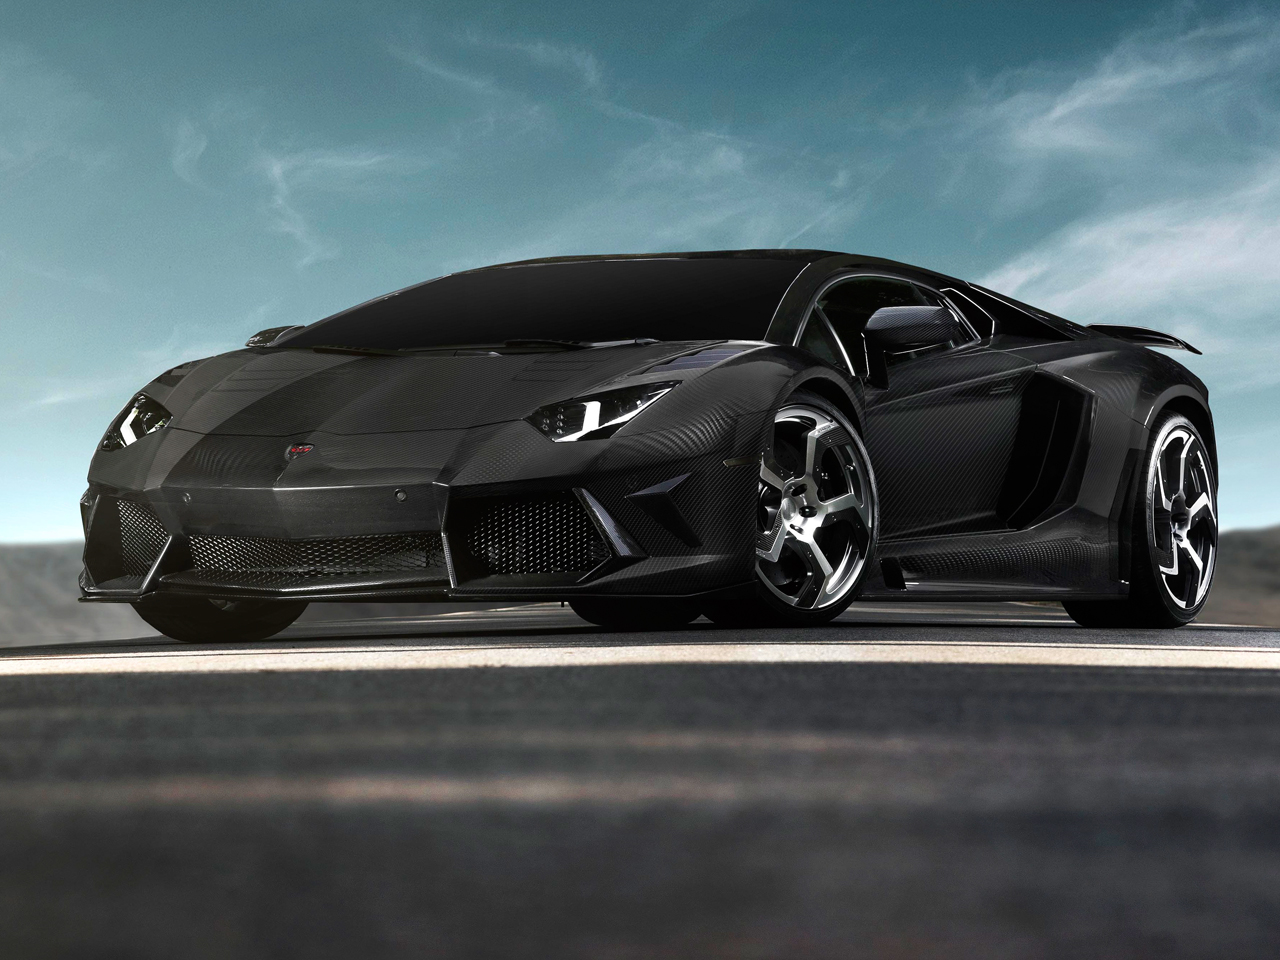 Lamborghini Aventador Extrem-Tuning 2012: Mansory Carbonado